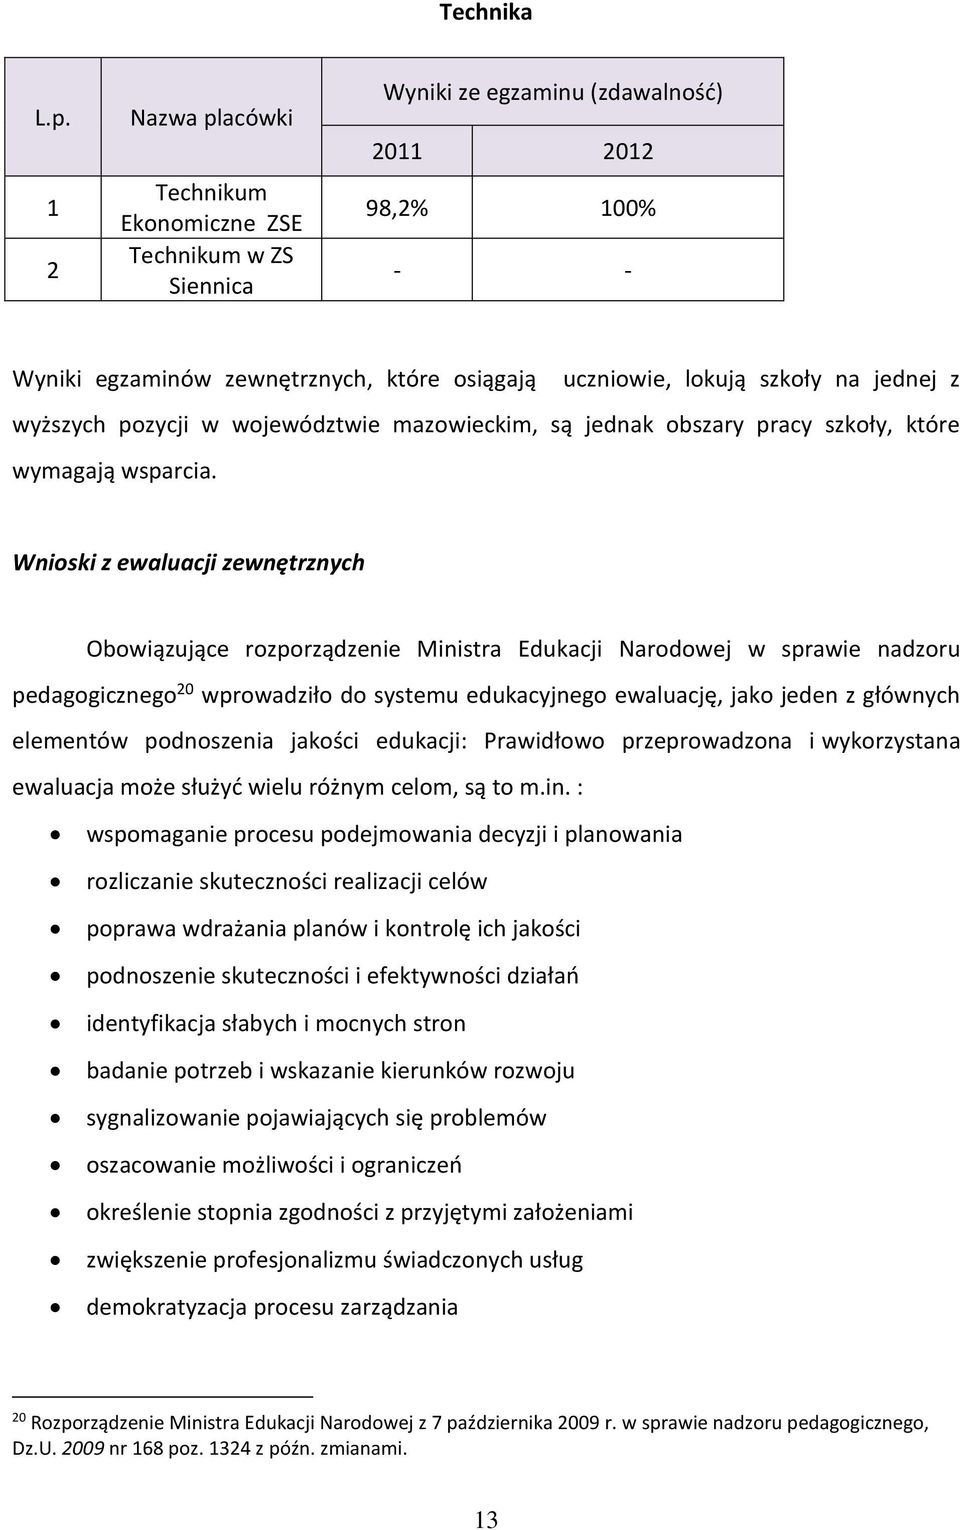 jednej z wyższych pozycji w województwie mazowieckim, są jednak obszary pracy szkoły, które wymagają wsparcia.